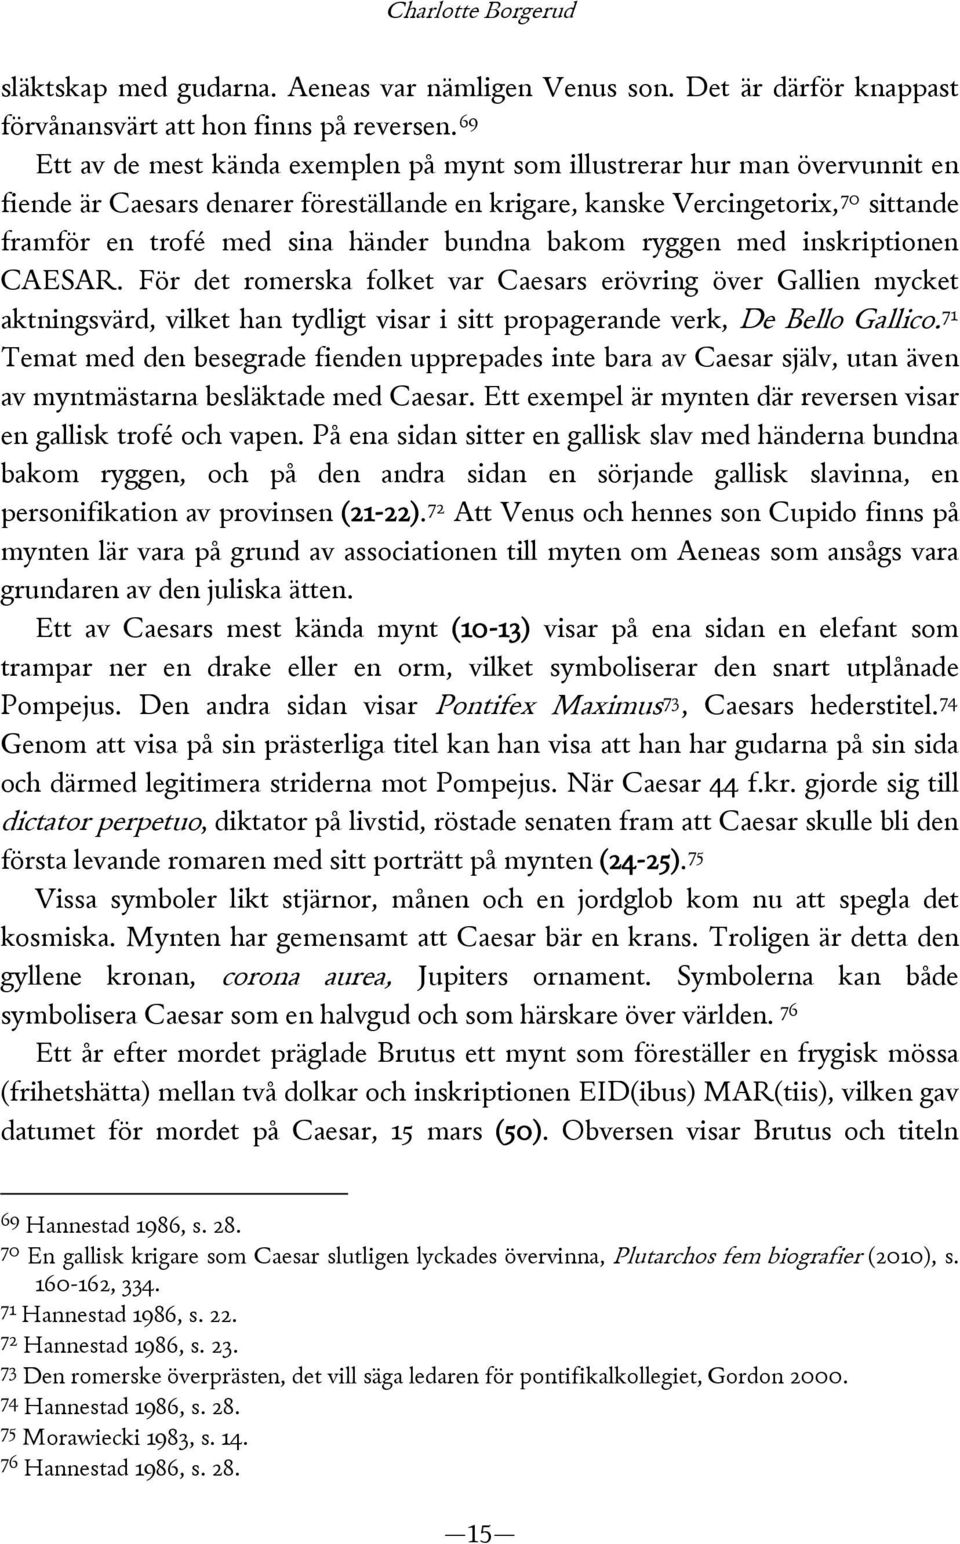 bundna bakom ryggen med inskriptionen CAESAR. För det romerska folket var Caesars erövring över Gallien mycket aktningsvärd, vilket han tydligt visar i sitt propagerande verk, De Bello Gallico.